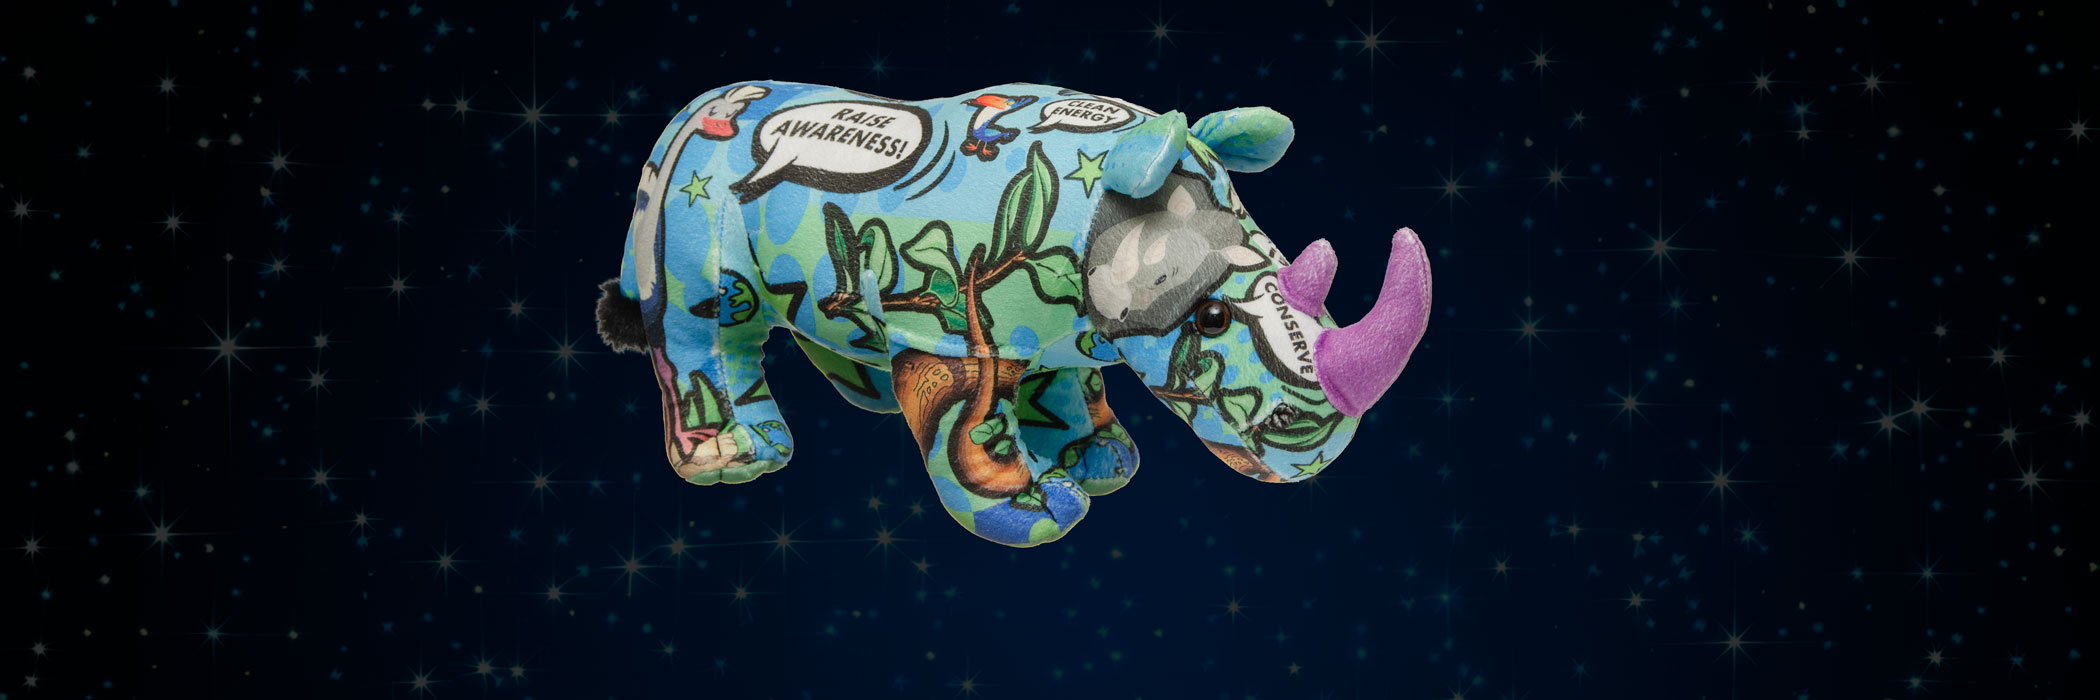 rhino art plush